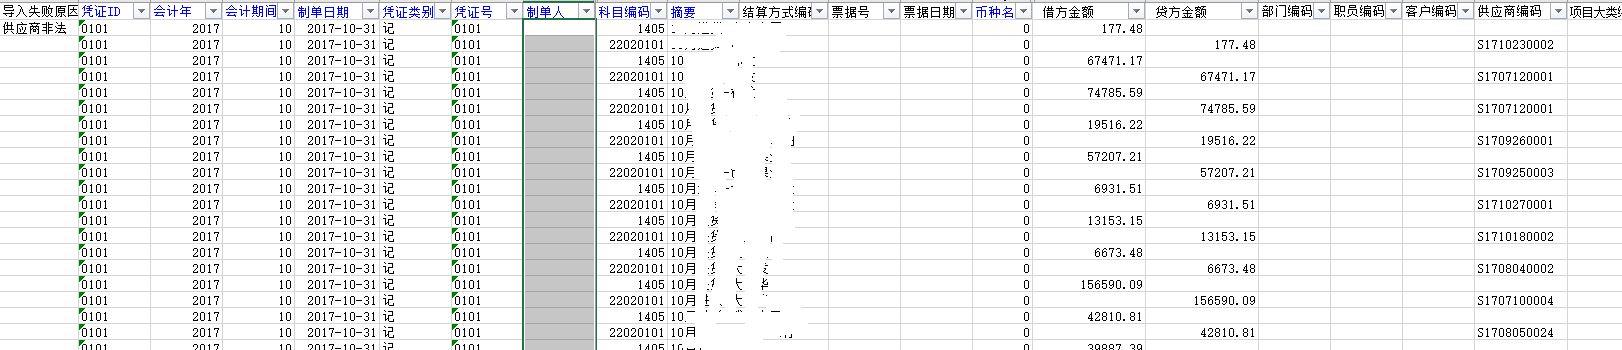 金蝶k3软件供应链怎么记账:四川用友财务软件报价是多少